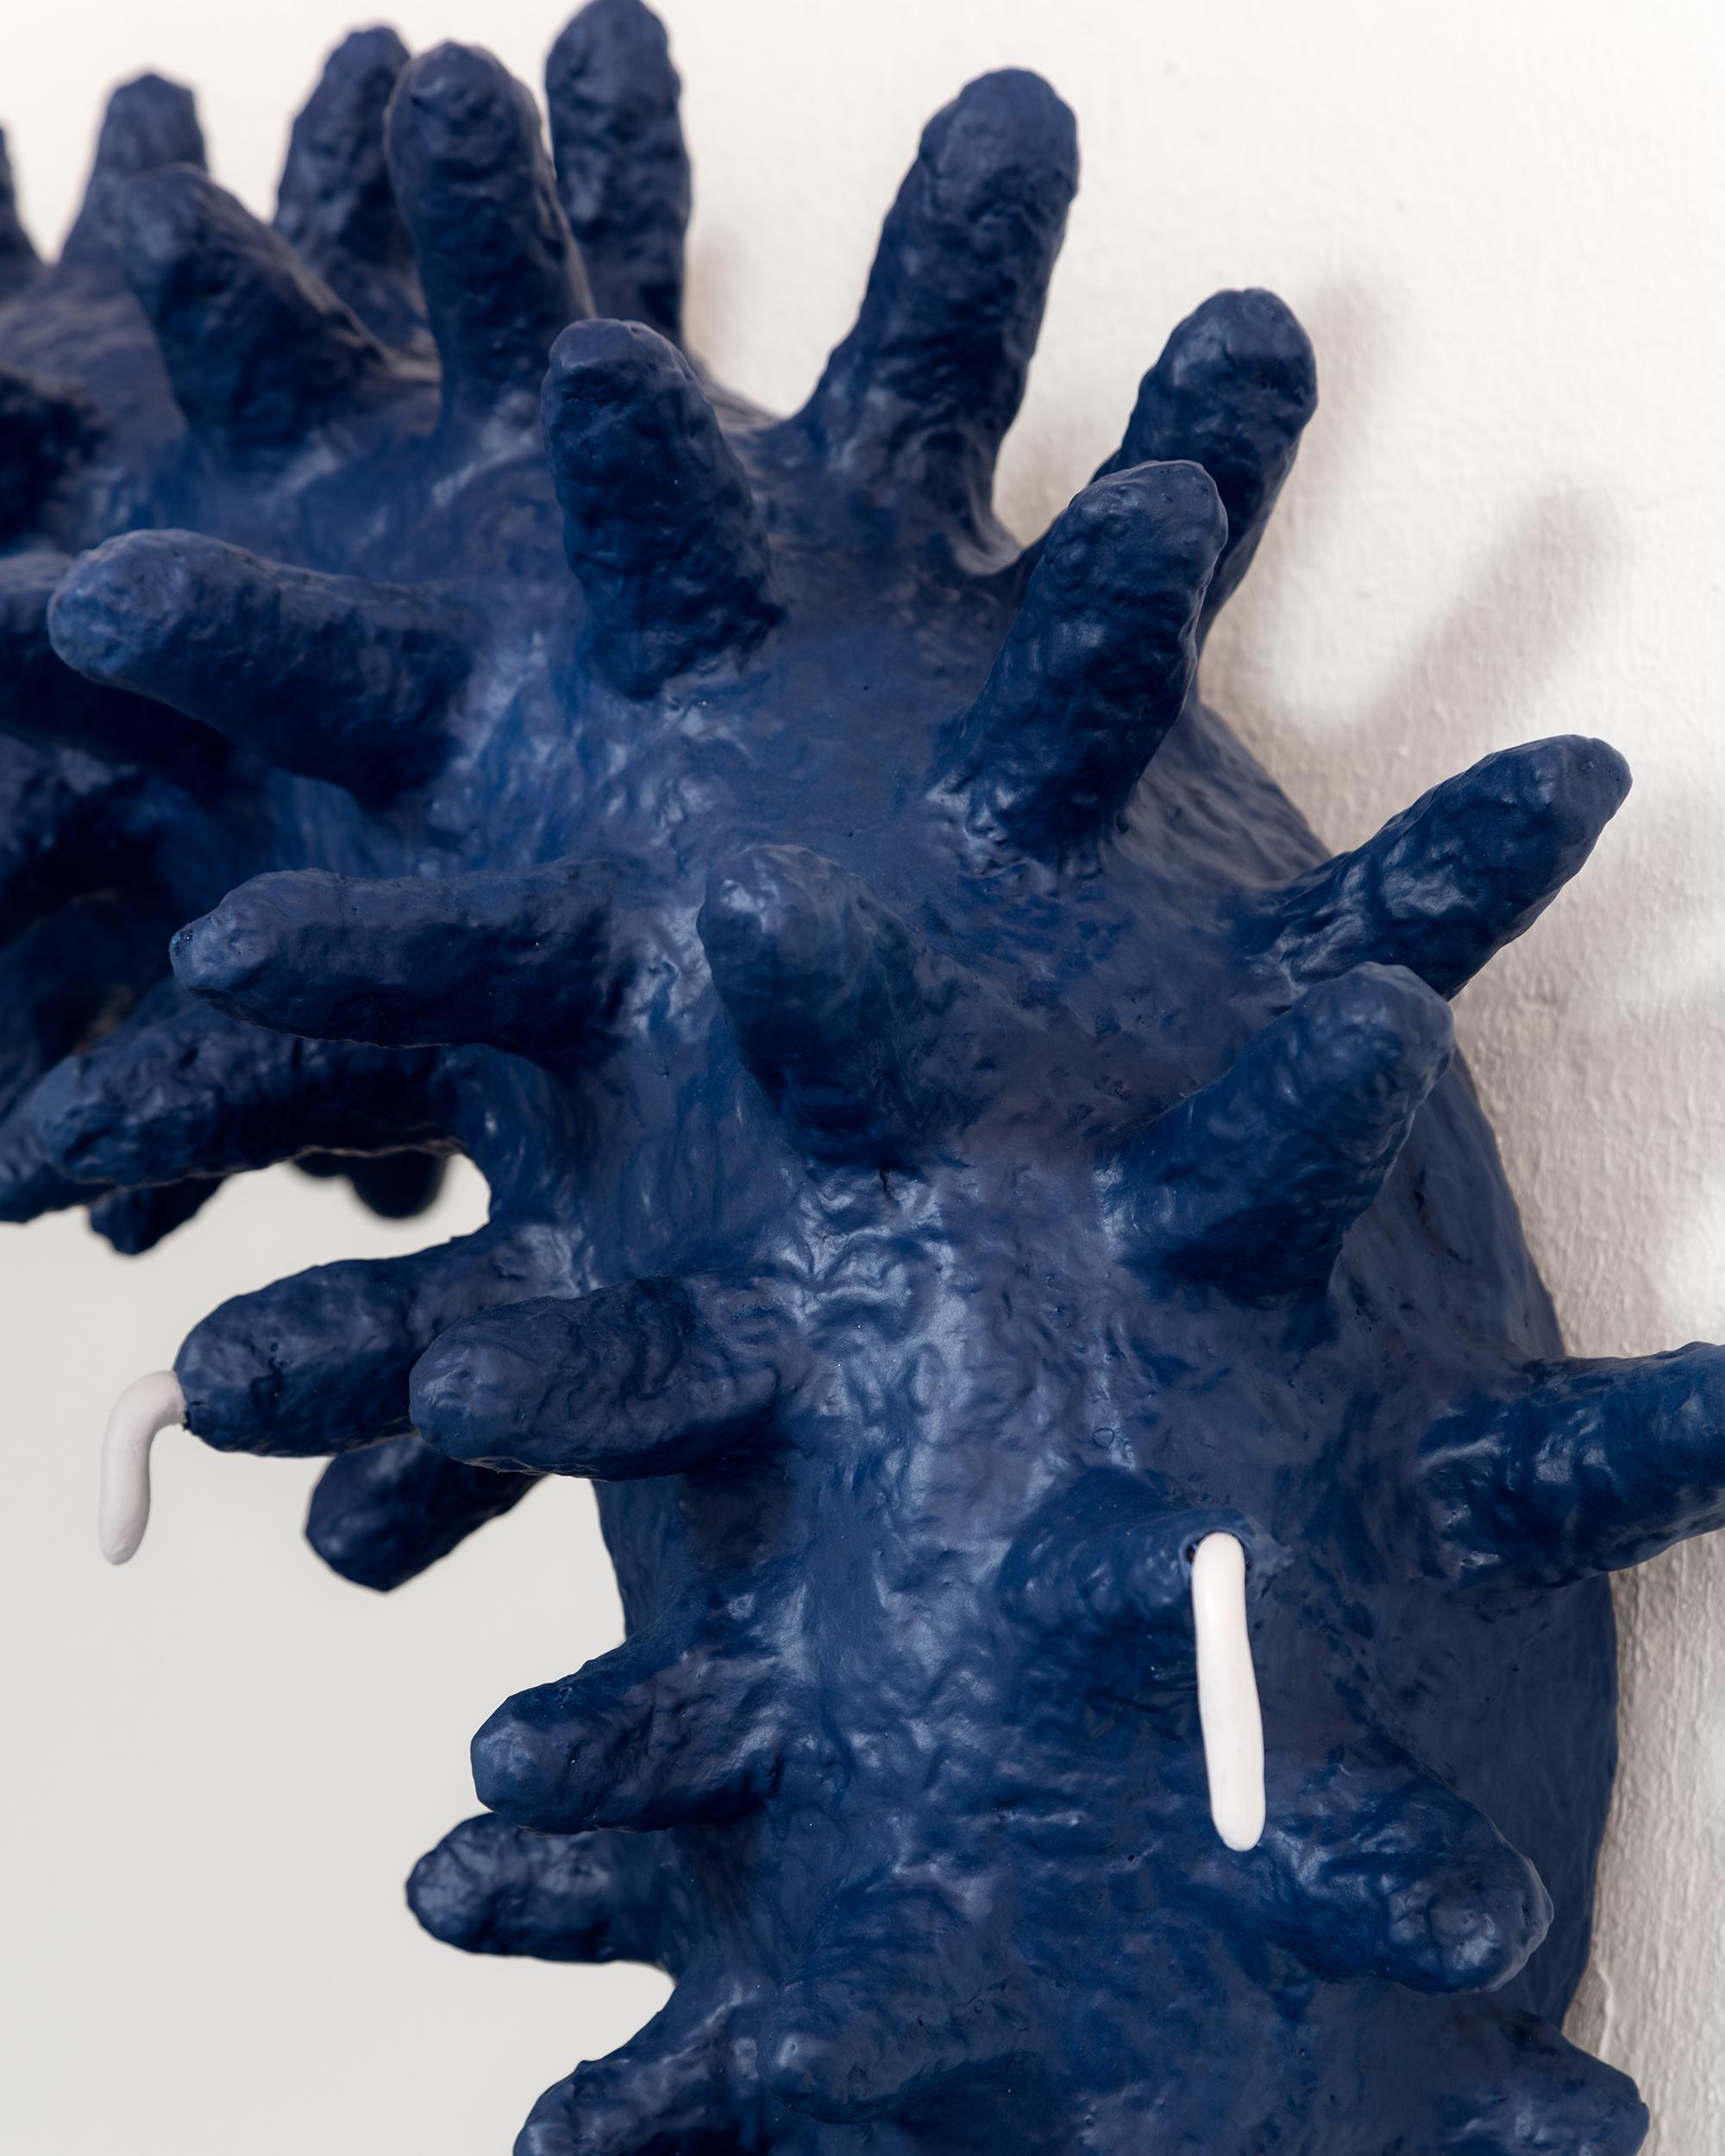 Alle ORGUS-Stücke wurden in Humberto da Matas Atelier in São Paulo, Brasilien, von Hand gefertigt.

Die Kollektion ist eine Erkundung der organischen Ästhetik, die direkt mit der Essenz der verwendeten Materialien verbunden ist.

Die